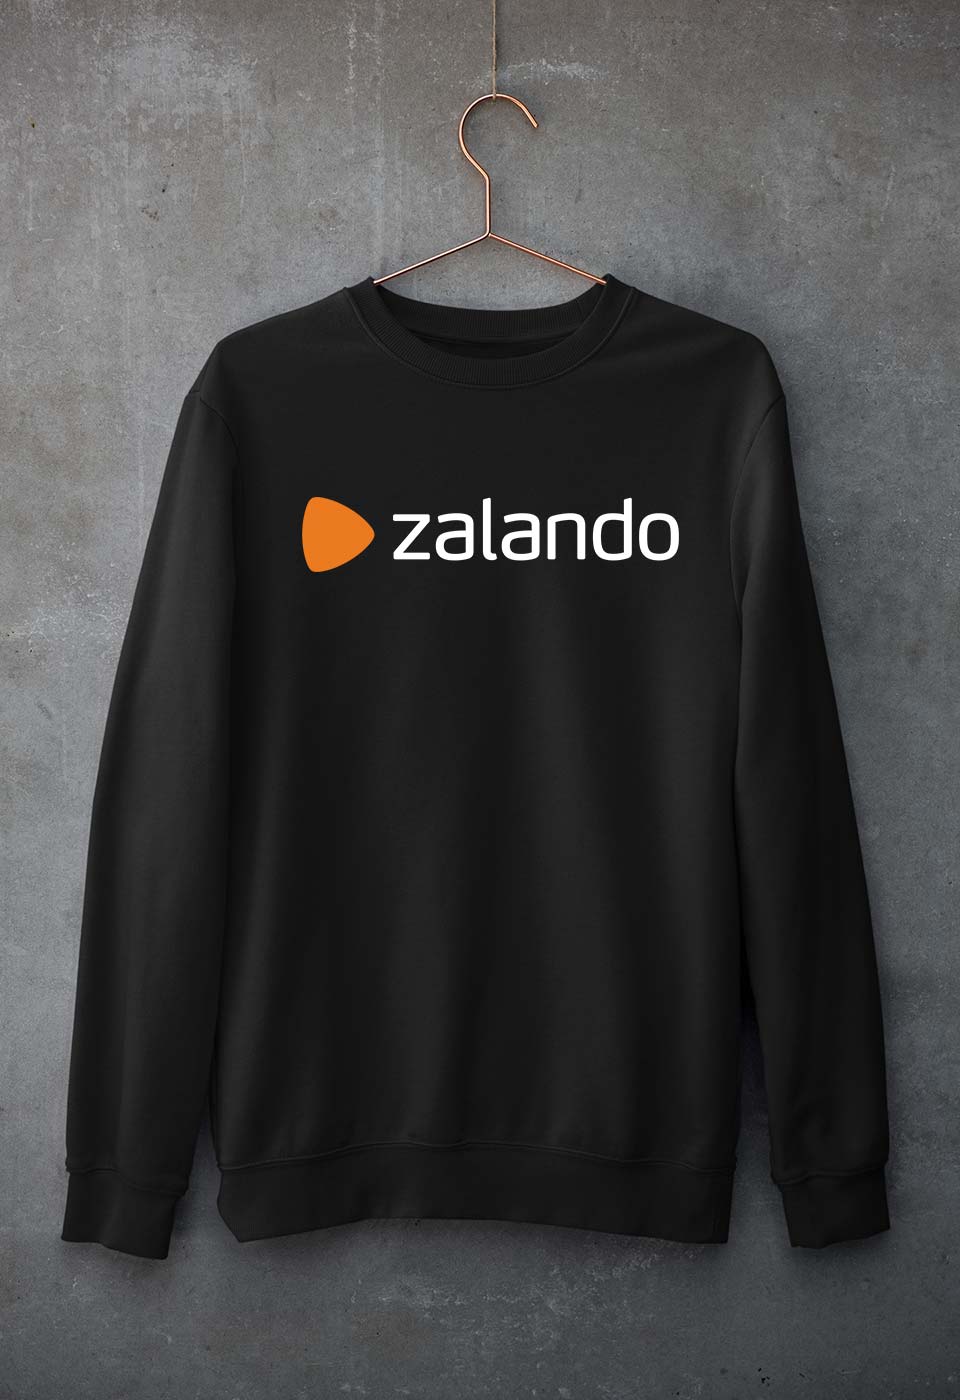 Zalando Unisex Sweatshirt for Men/Women-S(40 Inches)-Black-Ektarfa.online